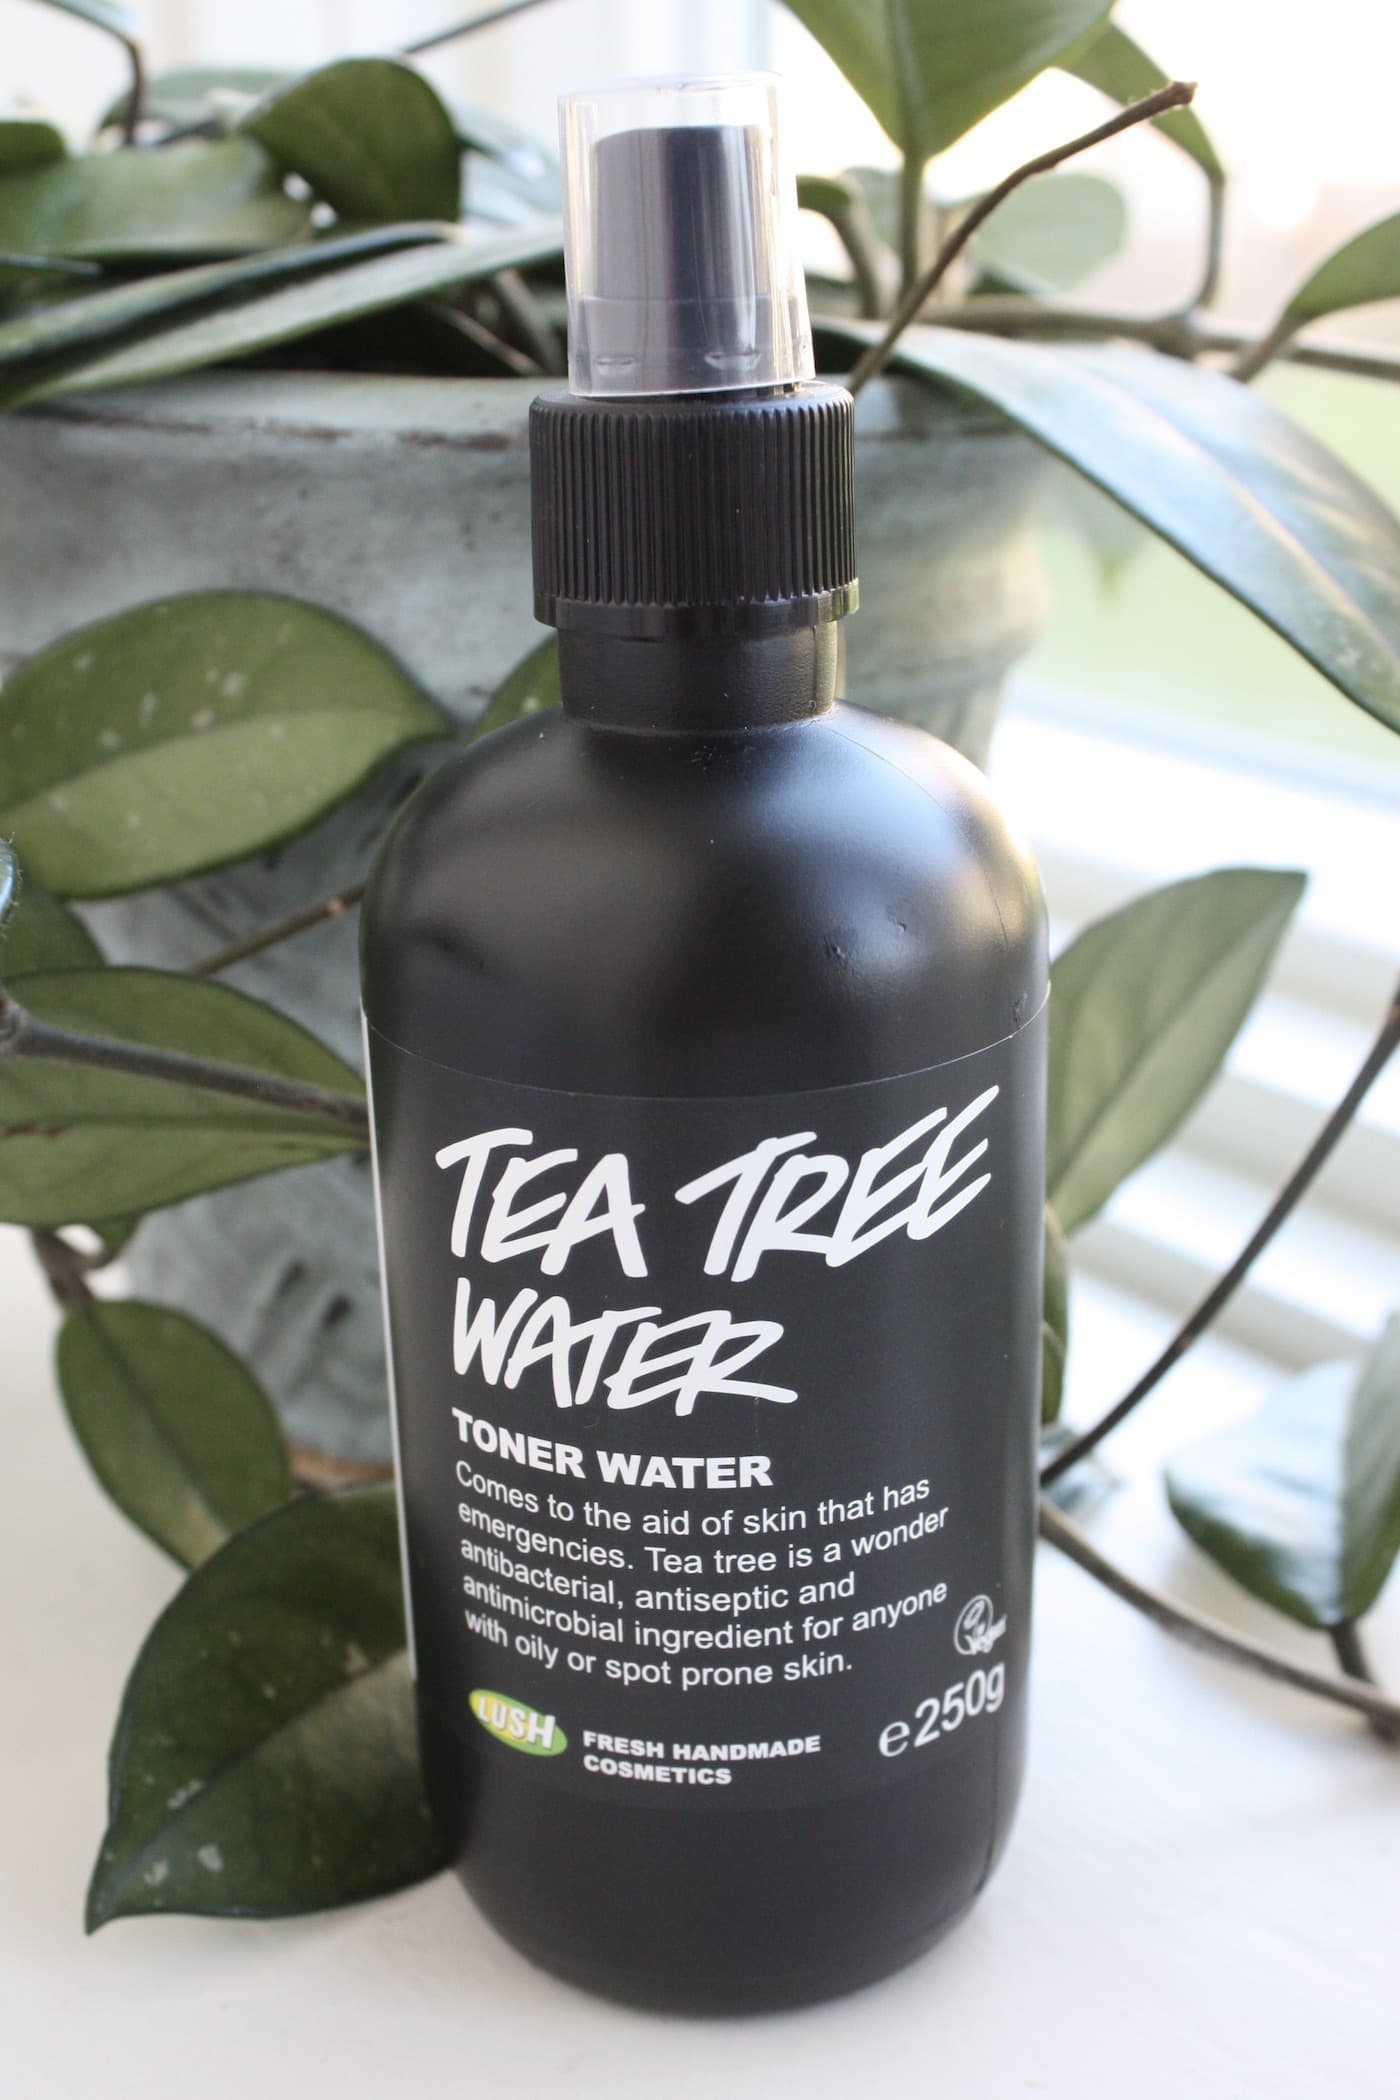 Lush tea tree water spray bottle 2018